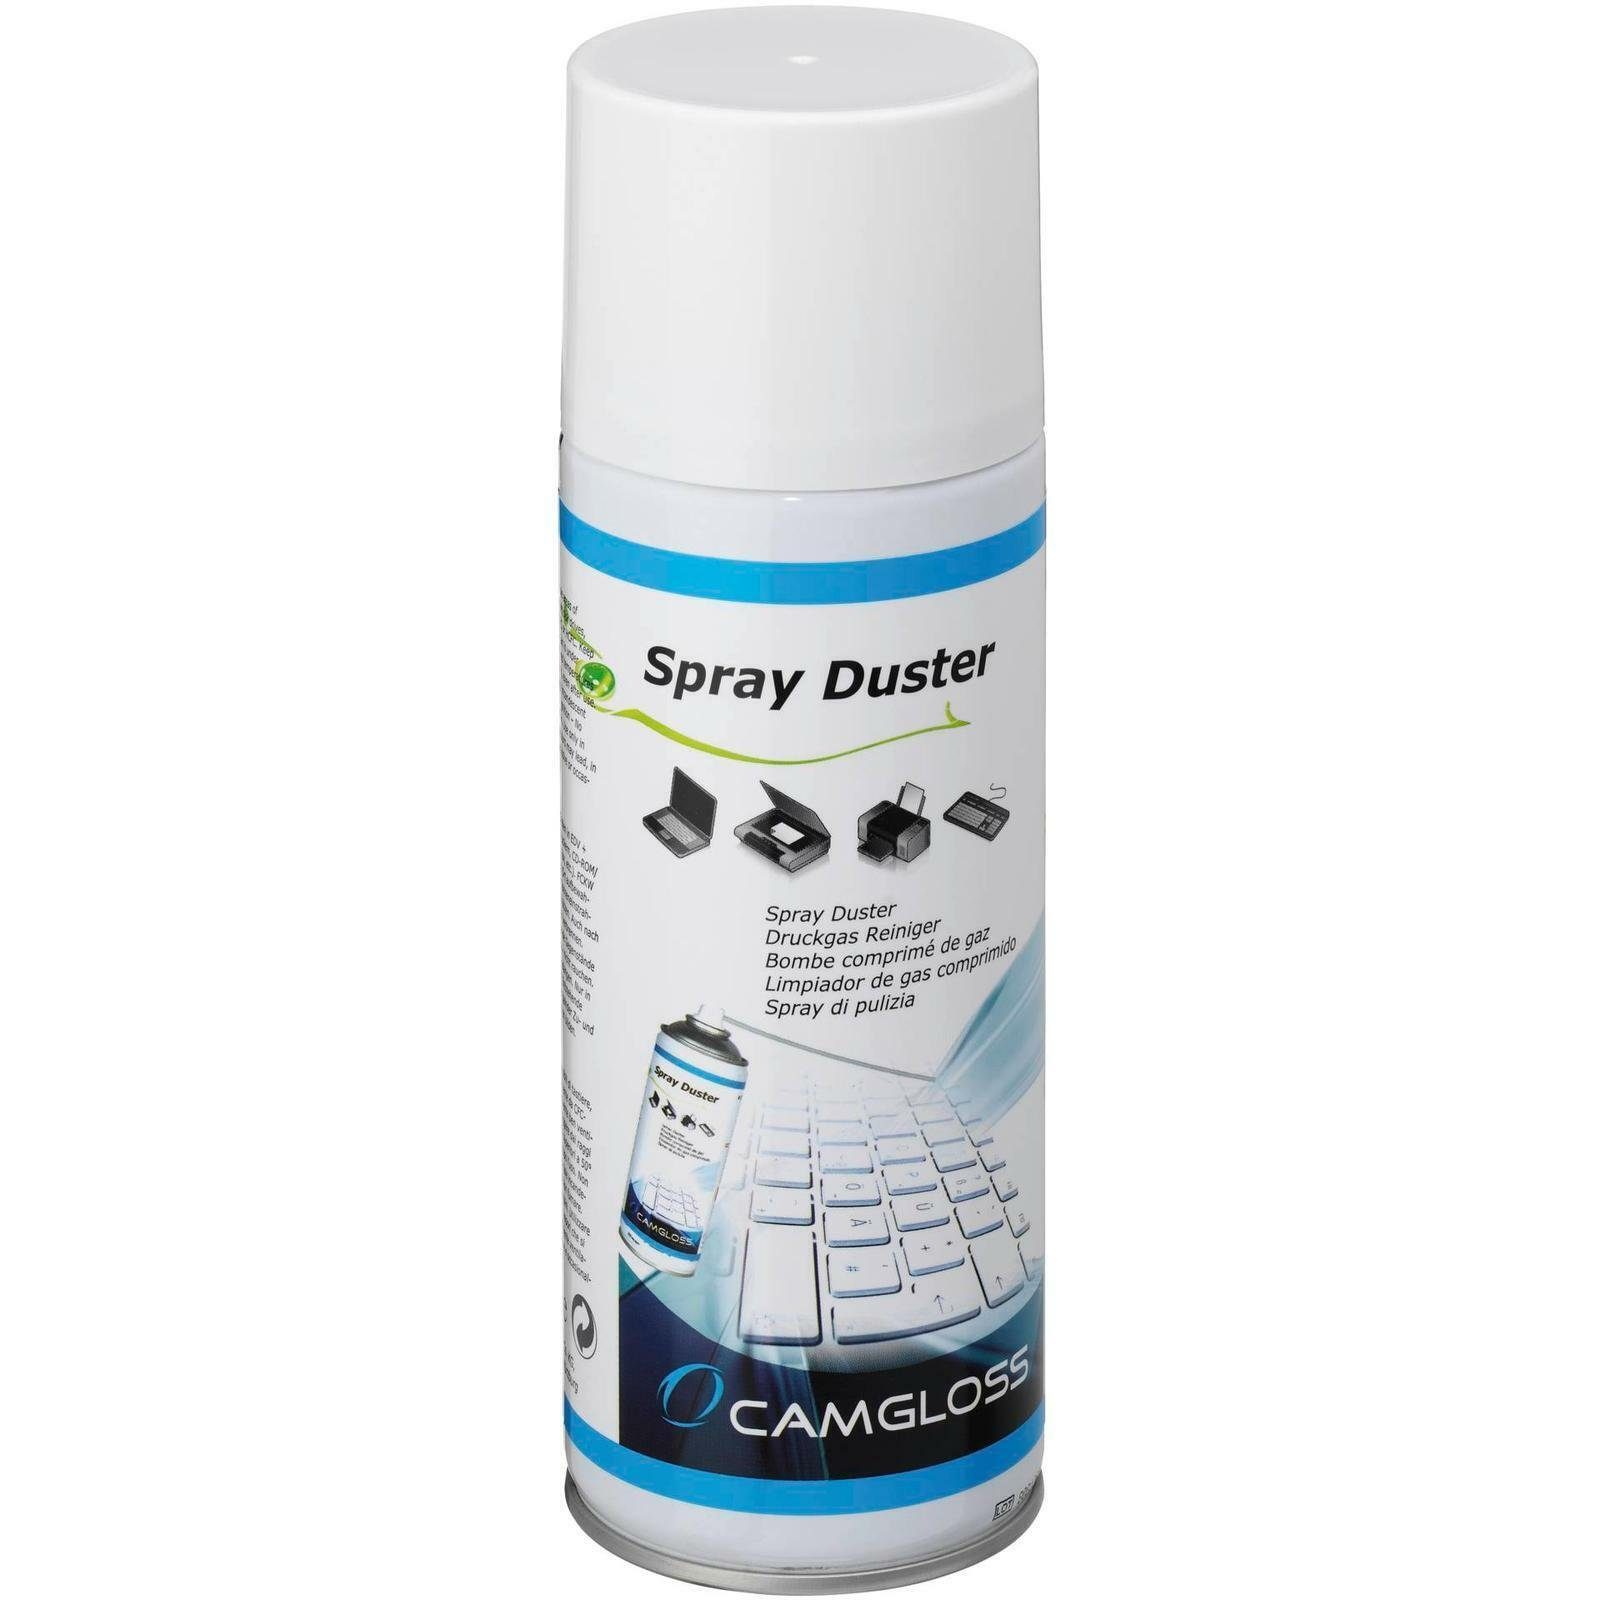 Druckgasspray 400 Reinigungsspray - Duster Spray ml - Camgloss